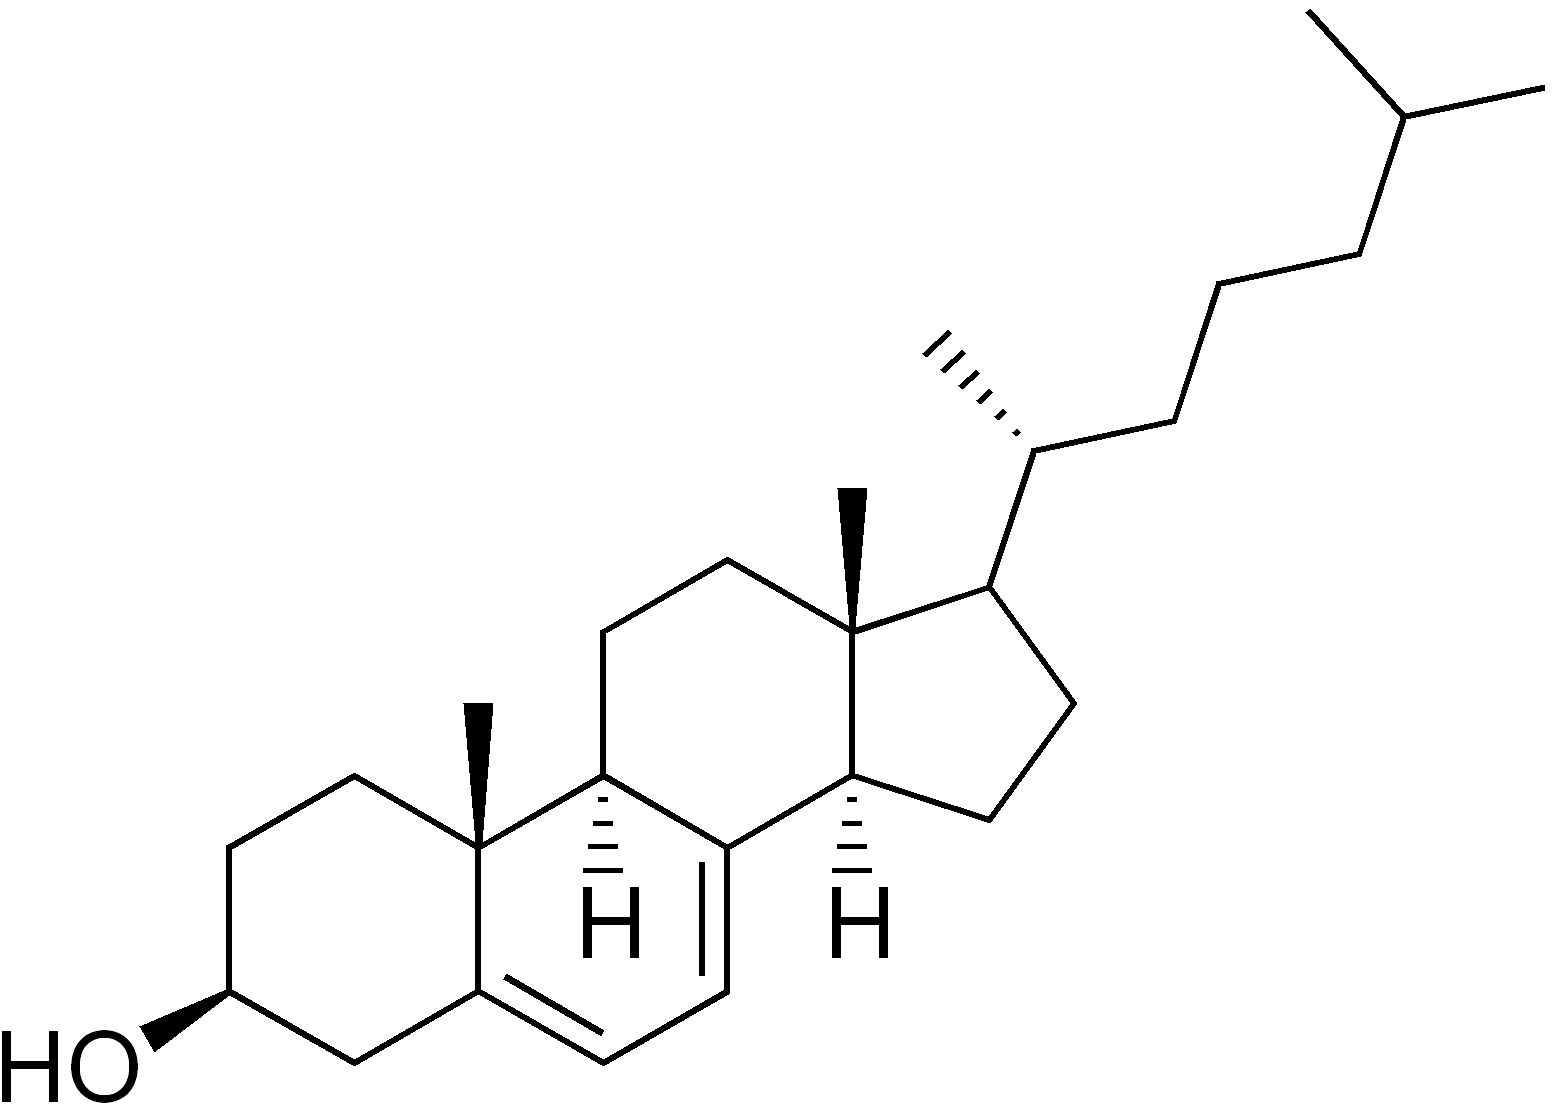 7-Dehydrochlolesterol.png